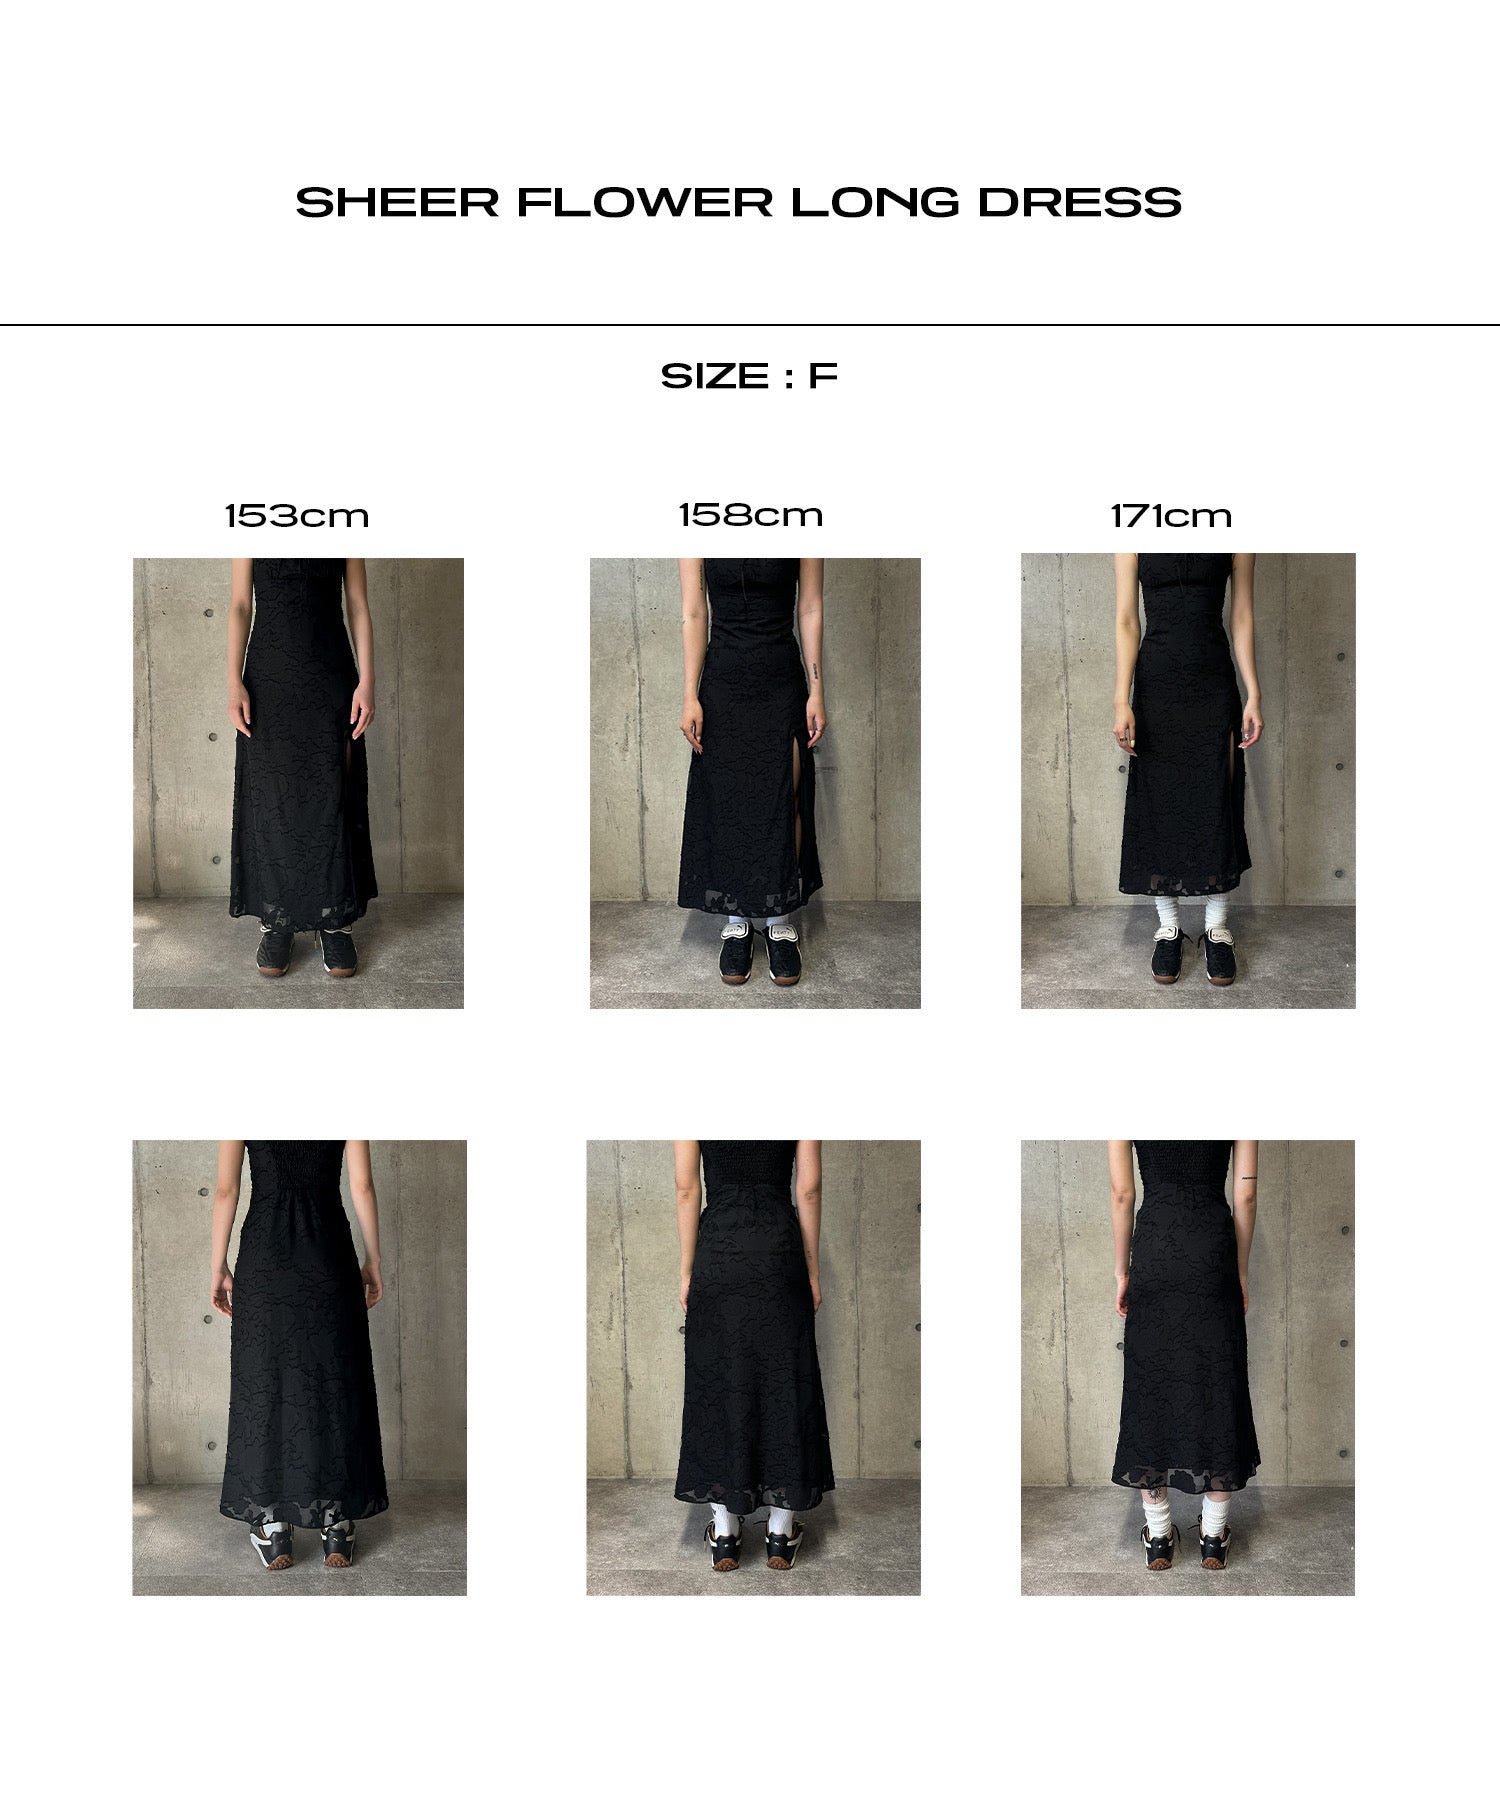 Sheer flower long dress